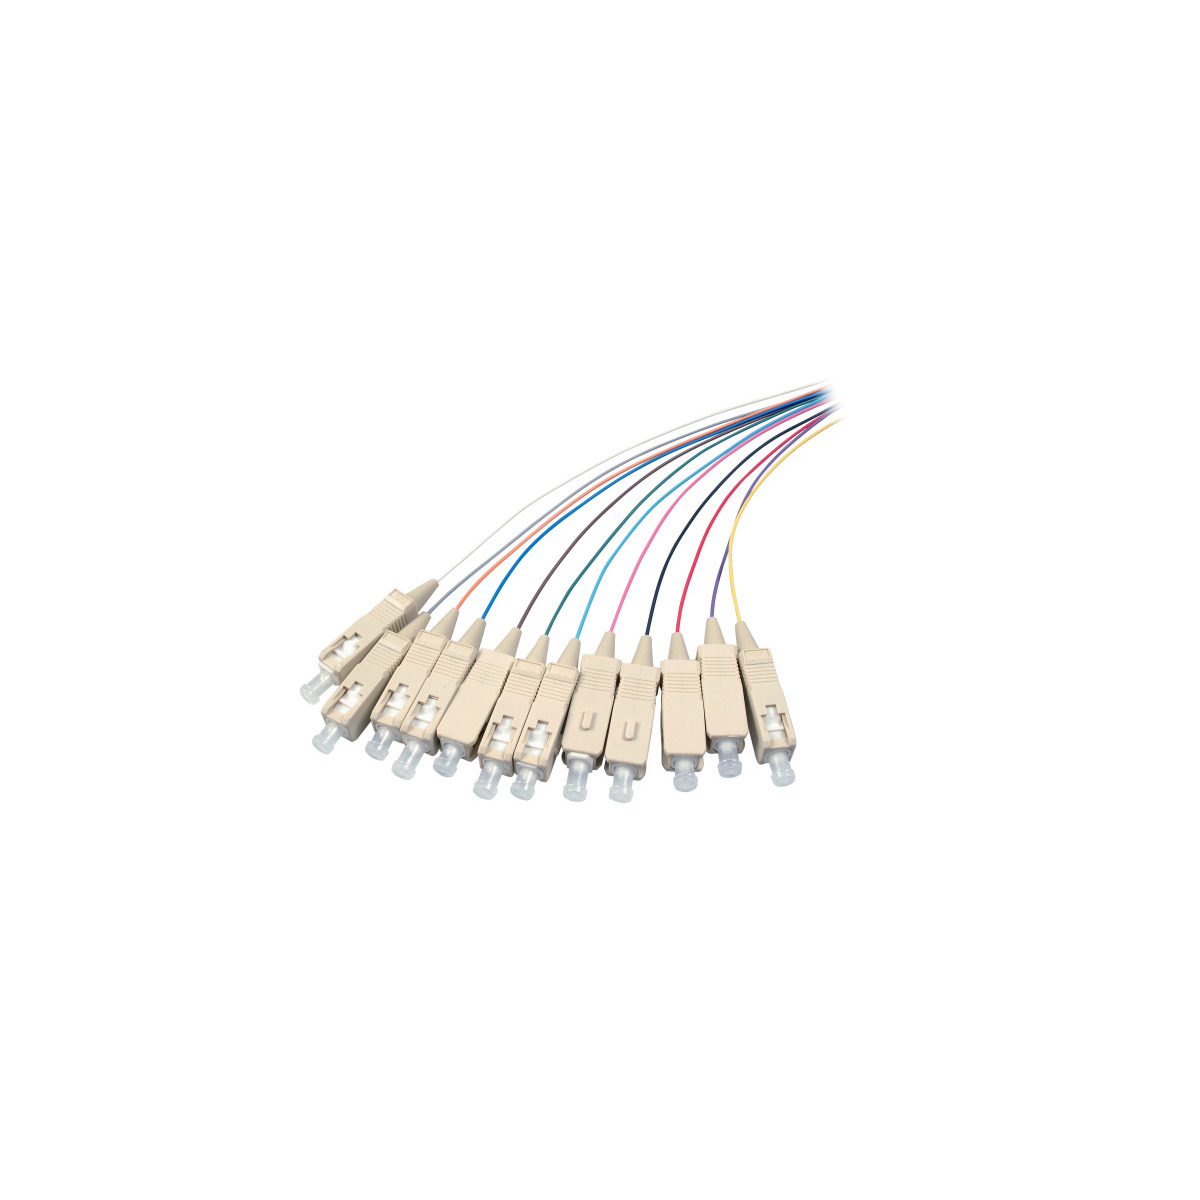 COMMUNIK Kabel Pigtails m SC / Faserpigtails, Glasfaserkabel, 2